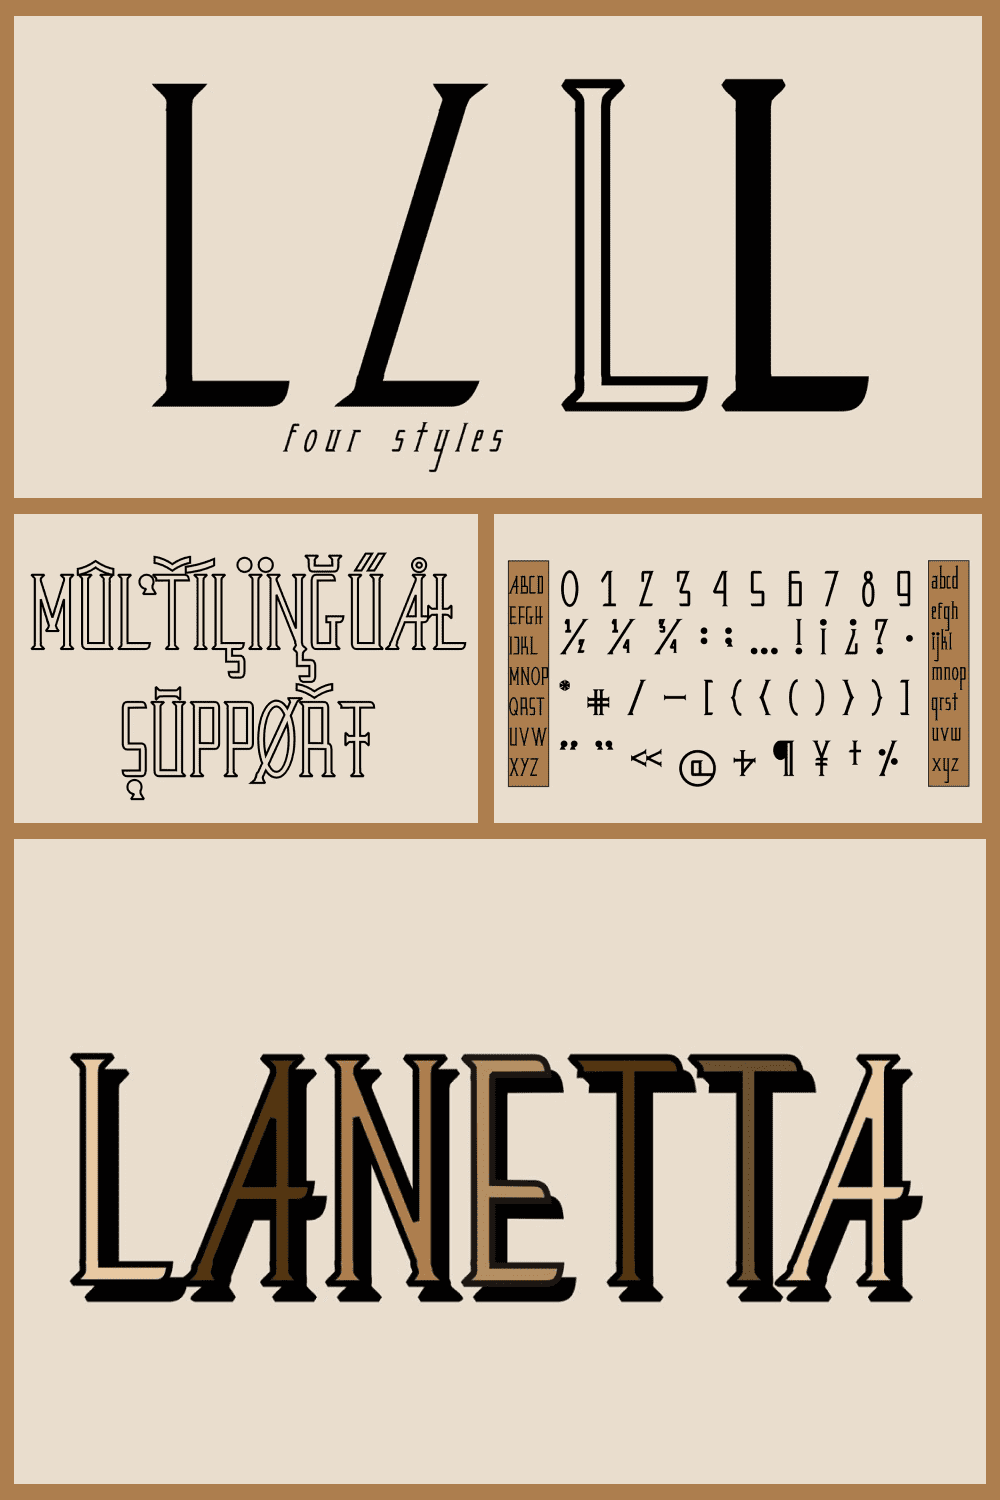 Lanetta typeface.